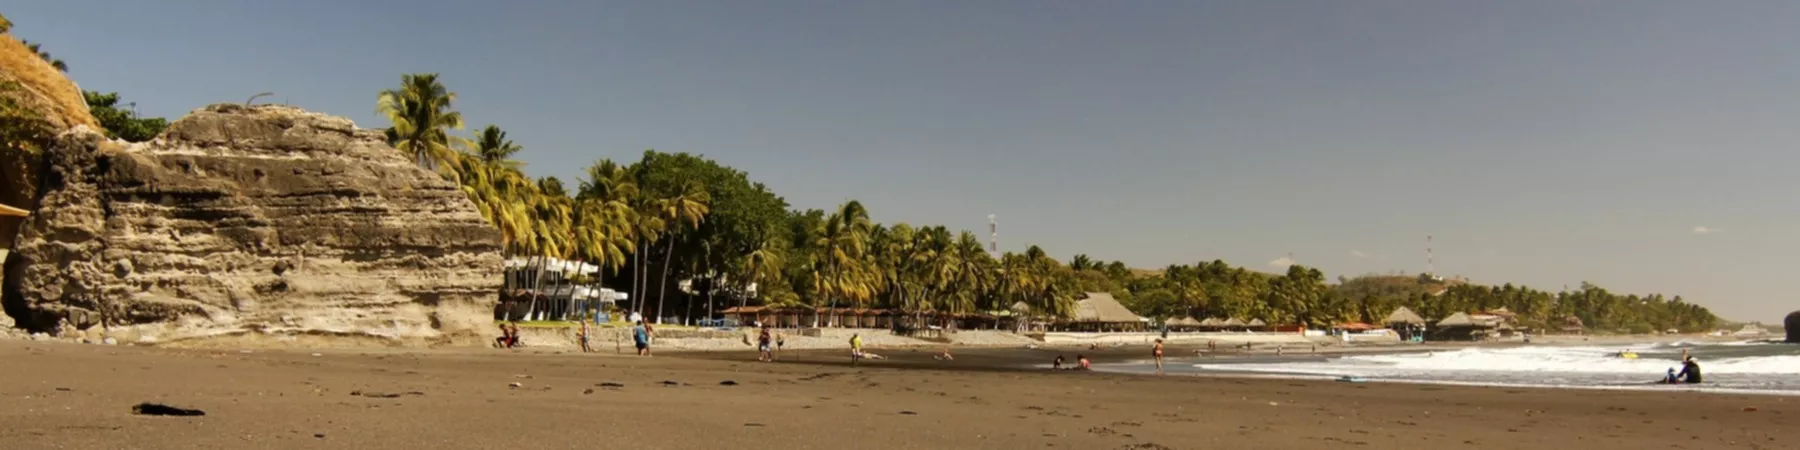 Playa El Sunzal in El Salvador, North America | Surfing,Beaches - Rated 0.8